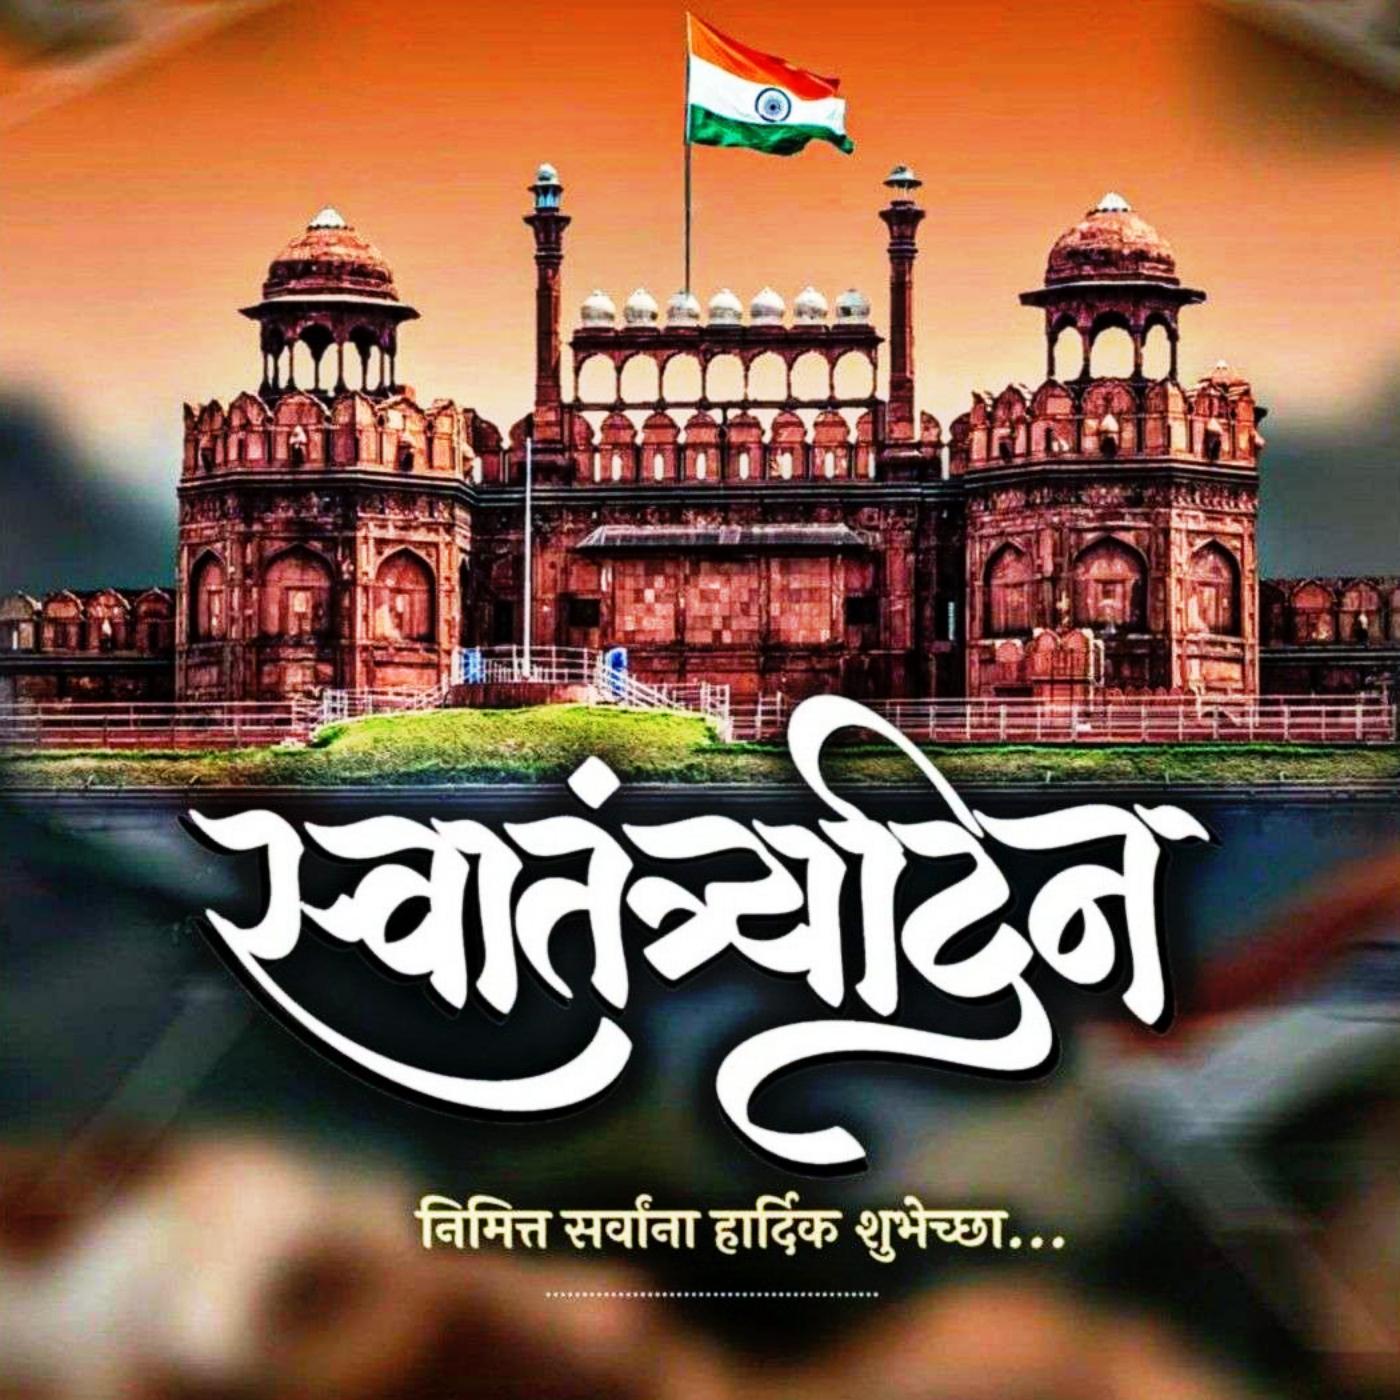 Happy Independence Day Images in Marathi - ShayariMaza